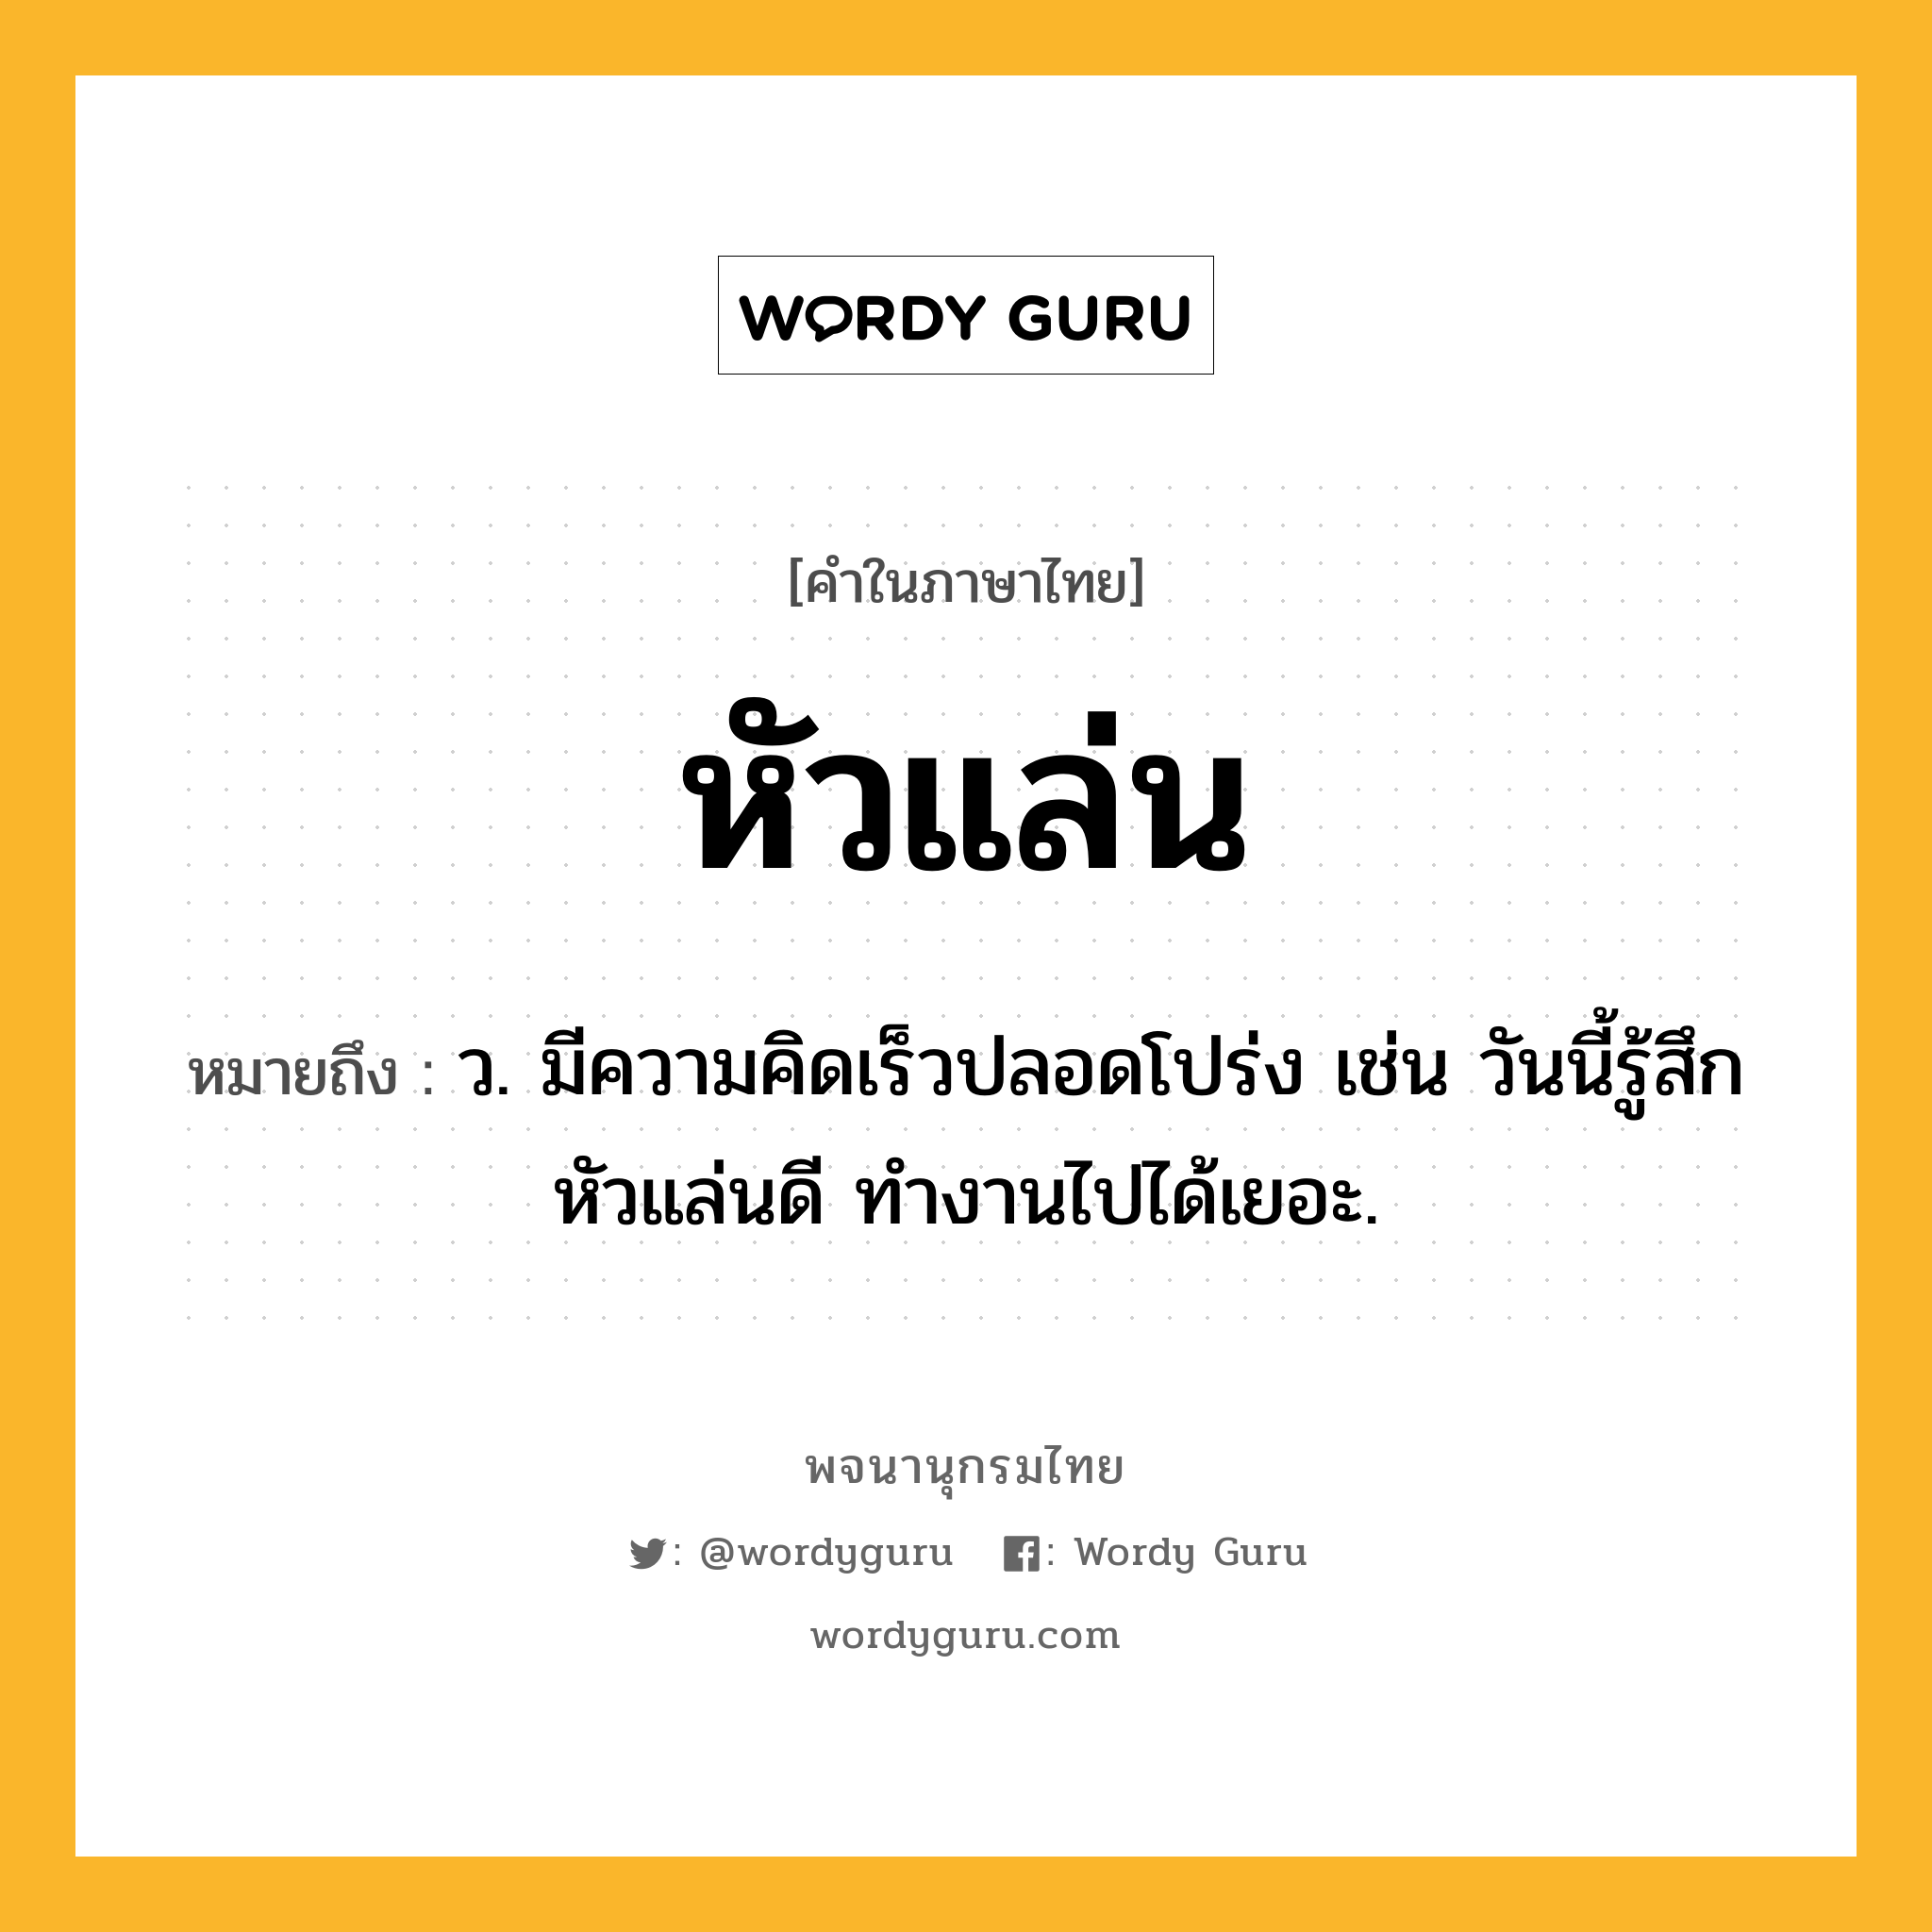 หัวแล่น ความหมาย หมายถึงอะไร?, คำในภาษาไทย หัวแล่น หมายถึง ว. มีความคิดเร็วปลอดโปร่ง เช่น วันนี้รู้สึกหัวแล่นดี ทำงานไปได้เยอะ.